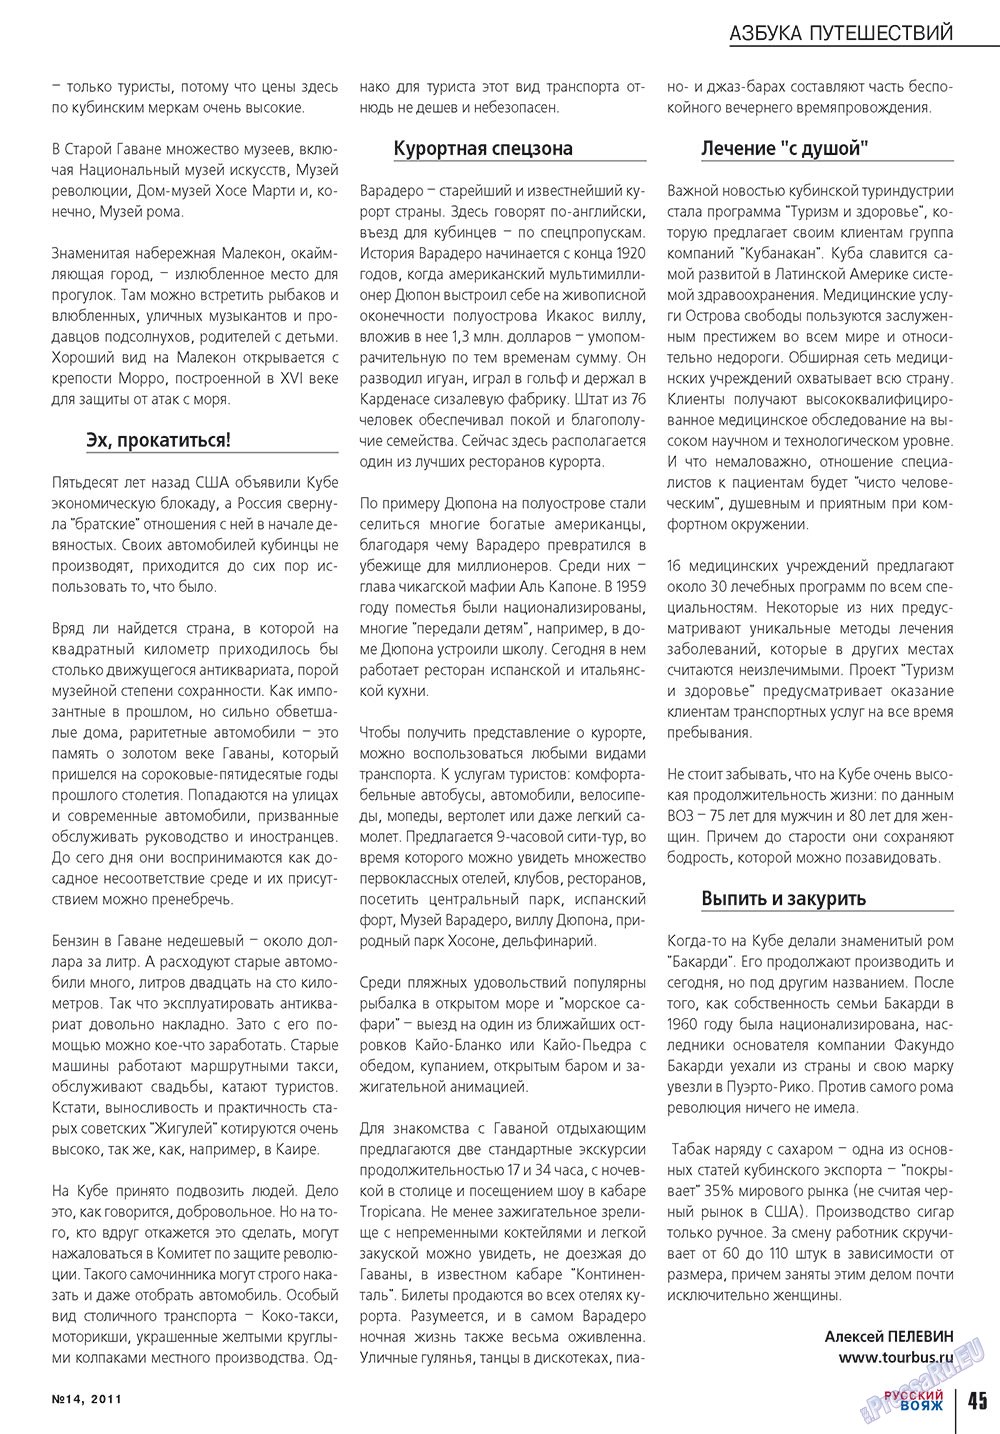 Русский вояж, журнал. 2011 №14 стр.45